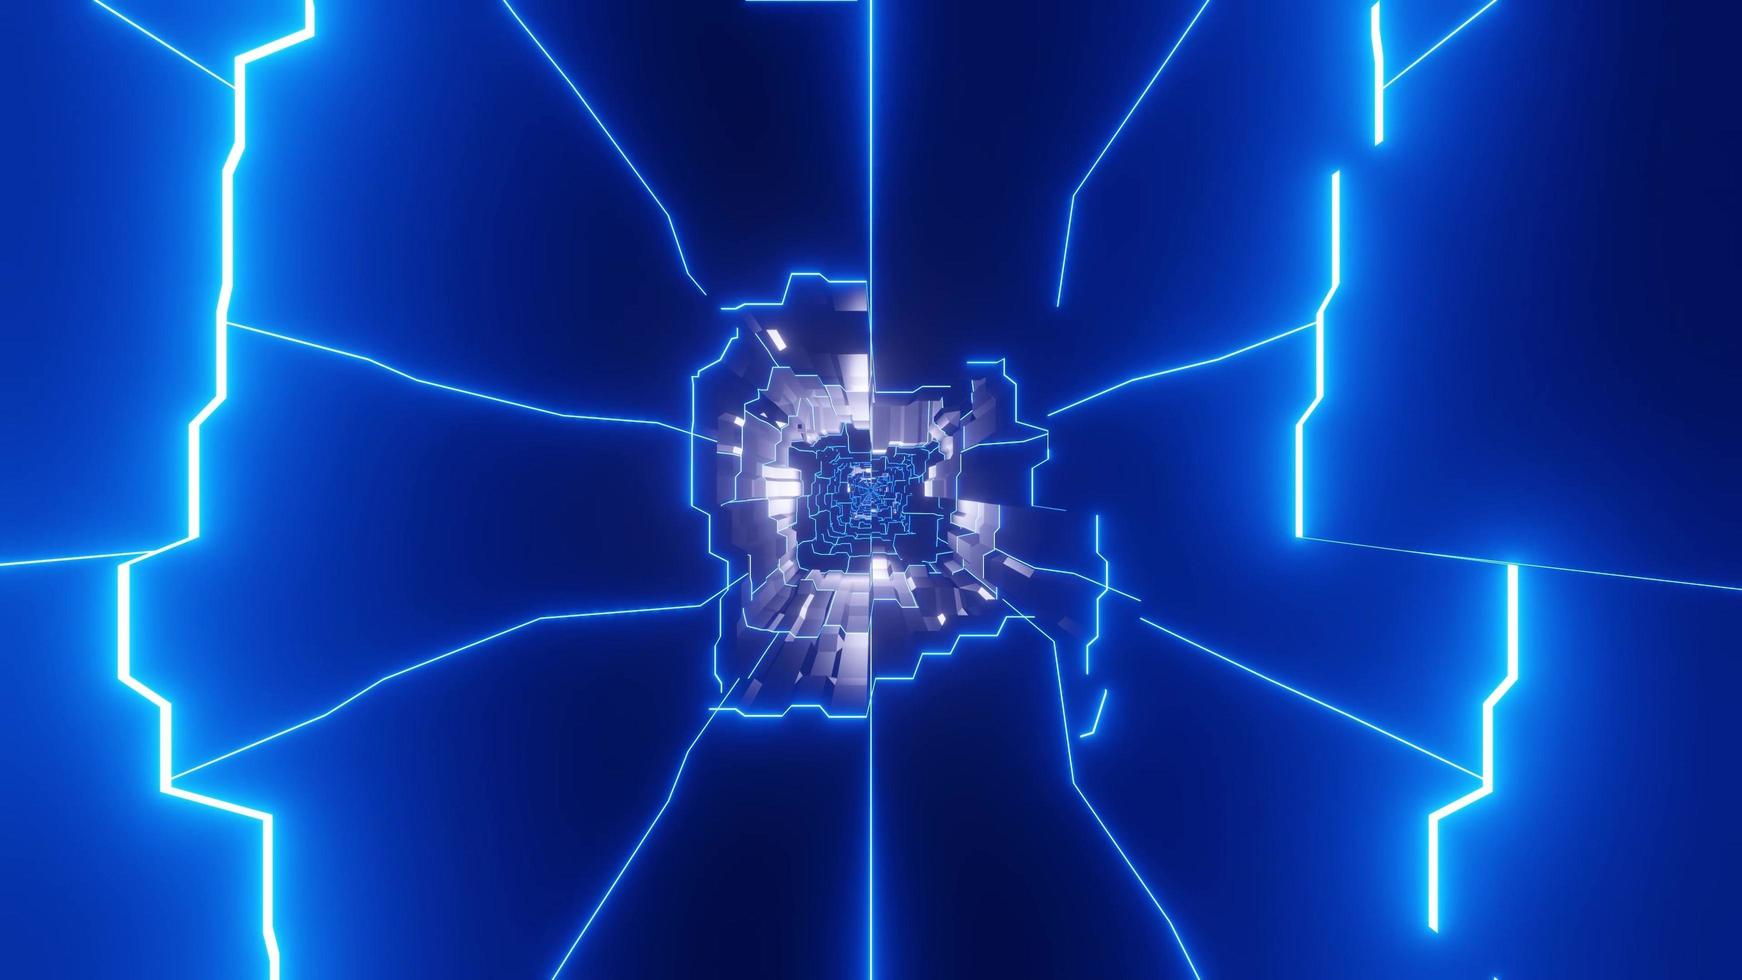 luci e forme blu e bianche nell'illustrazione 3d del caleidoscopio per fondo o carta da parati foto